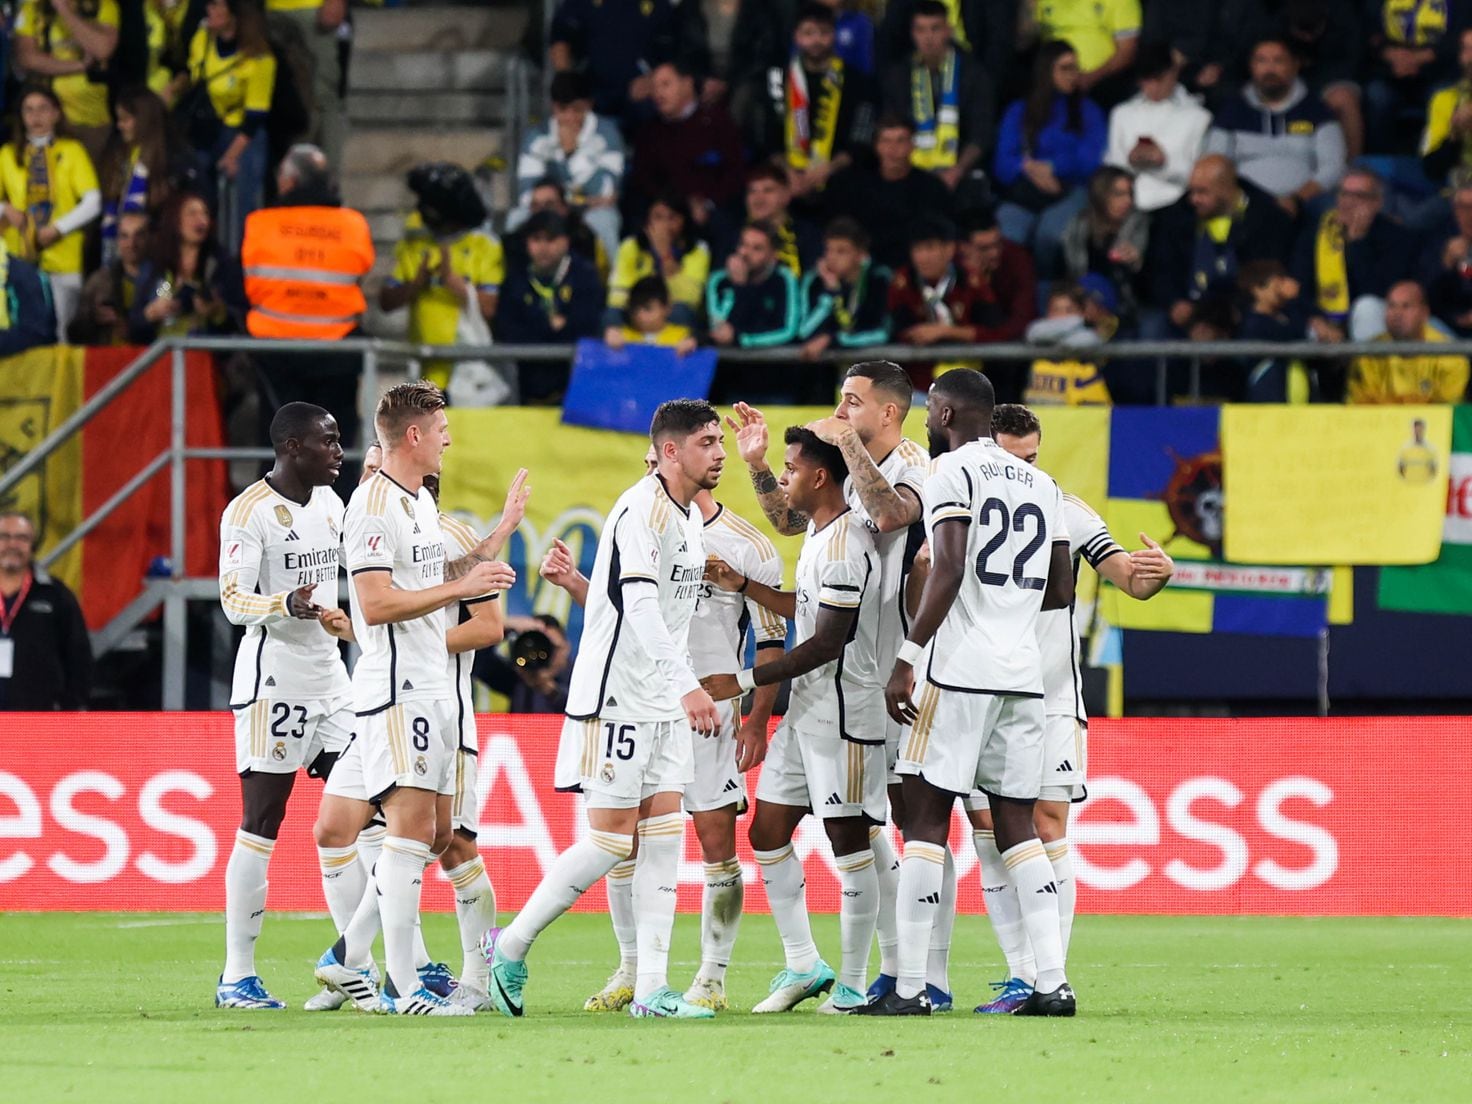 O Jogo do Fenerbahçe: História, Títulos e Destaques